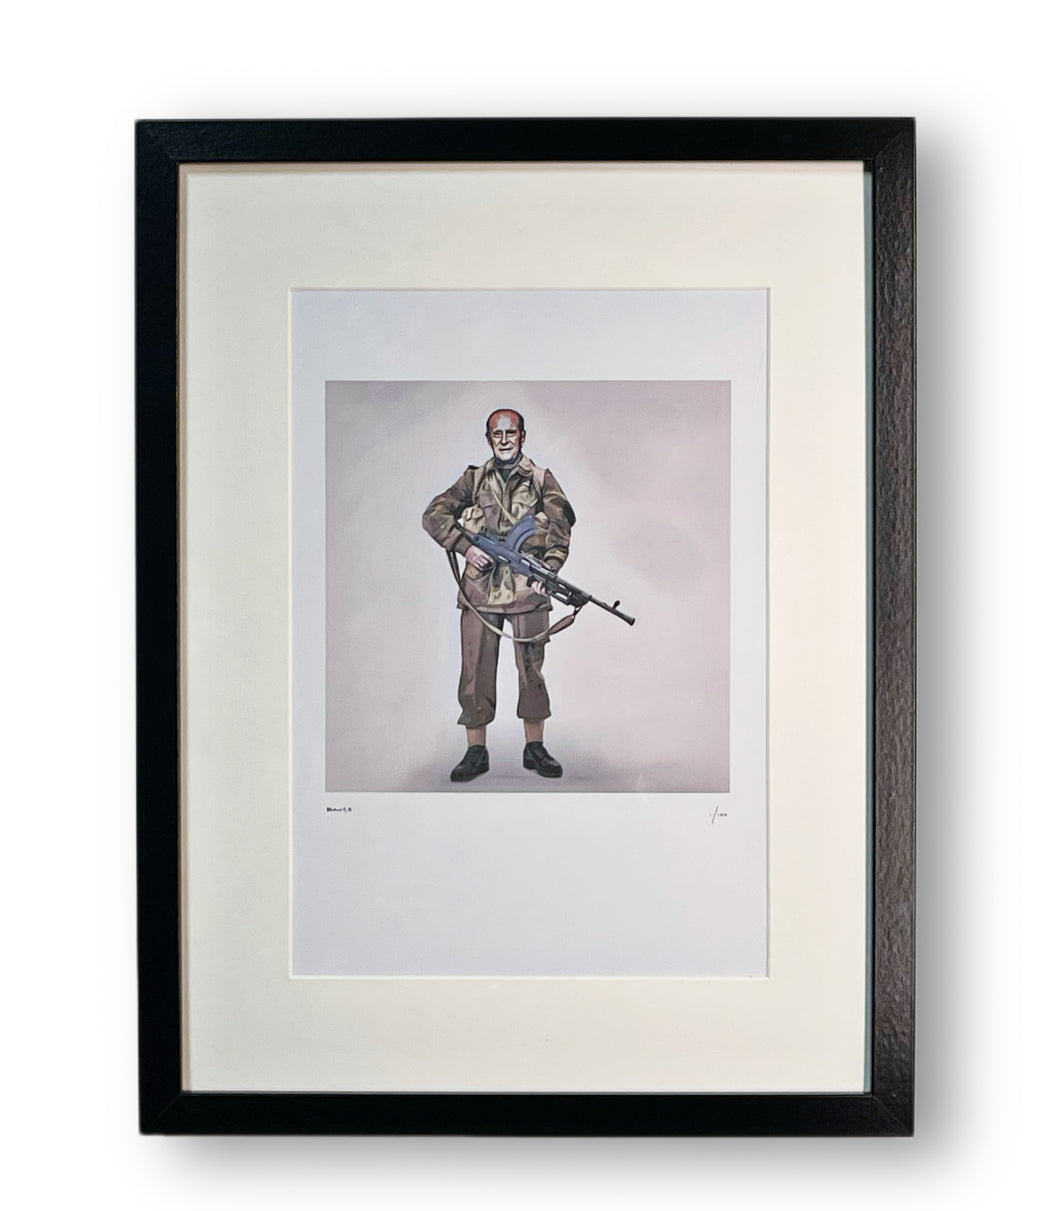 'The Duke' Framed Artwork Print